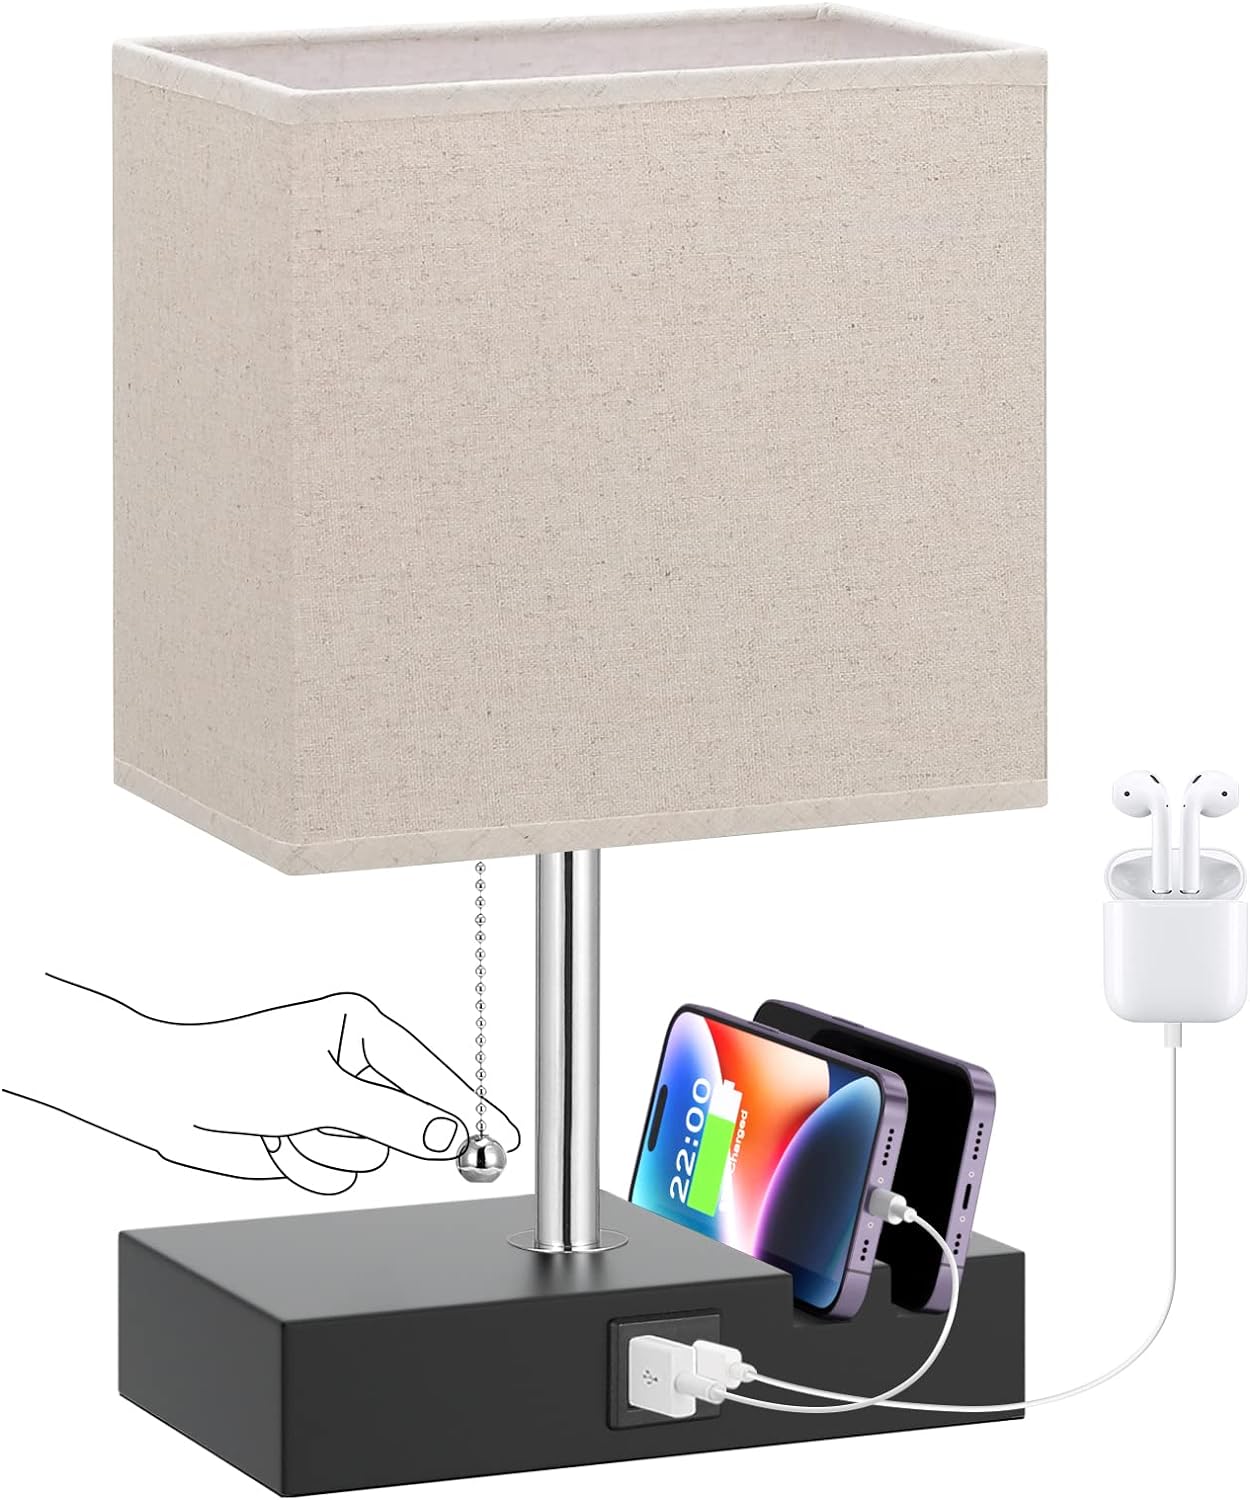 Lámpara de mesa USB para dormitorio con brillo de 3 colores lámpara de mesita